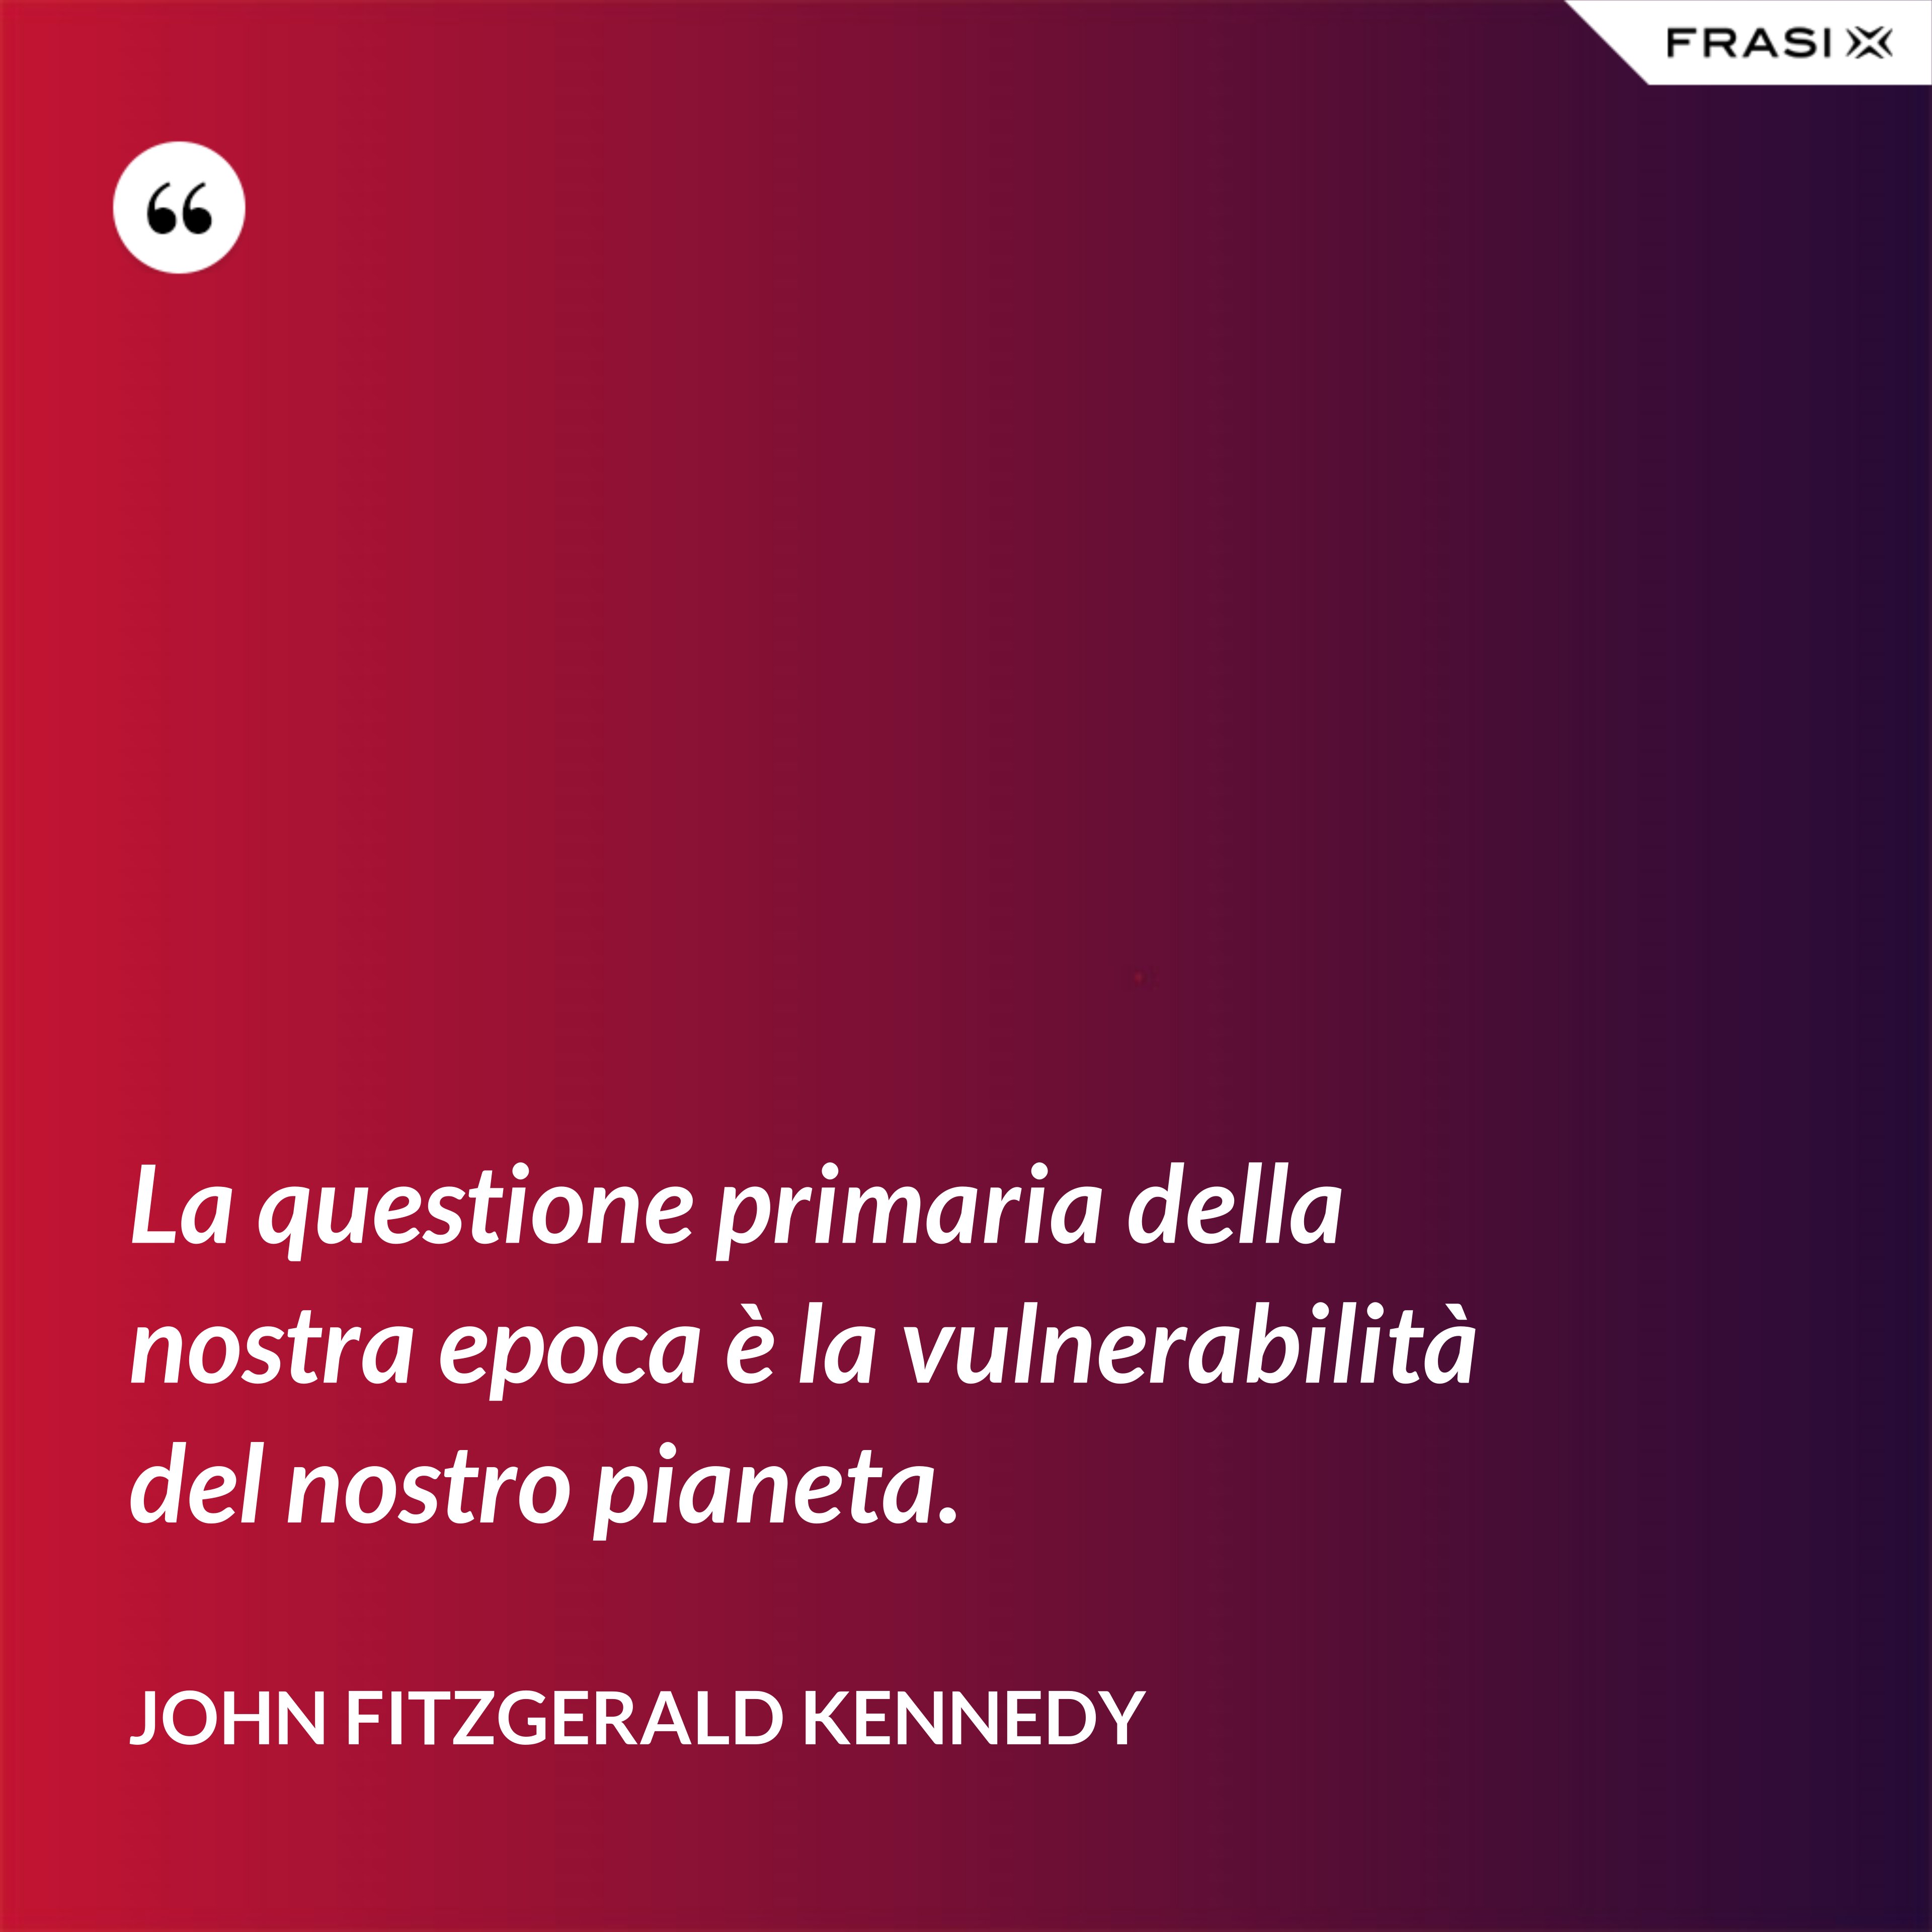 La questione primaria della nostra epoca è la vulnerabilità del nostro pianeta. - John Fitzgerald Kennedy